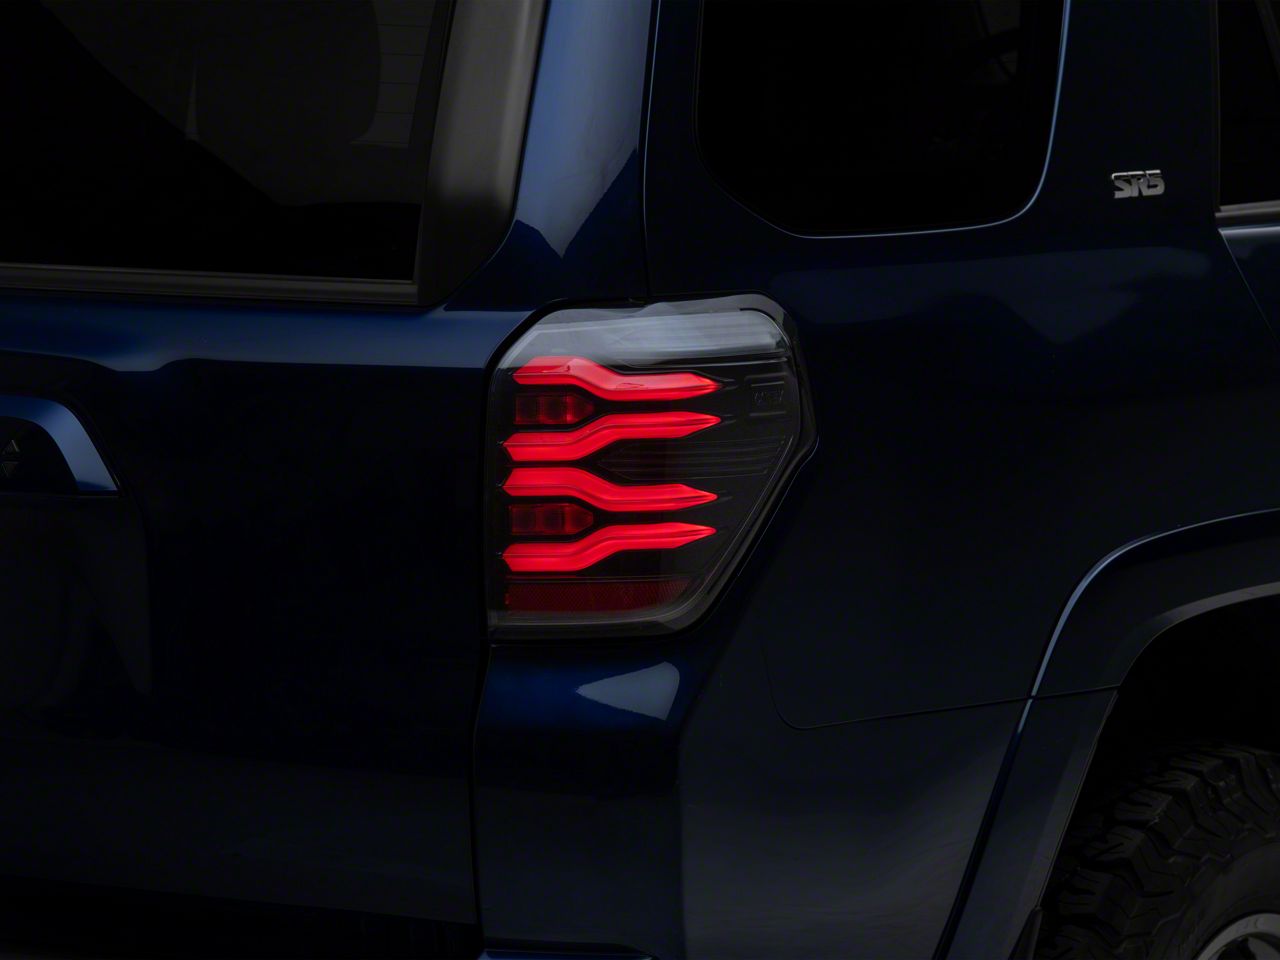 Toyota 4Runner (21-24): XB LED Headlight Adapter